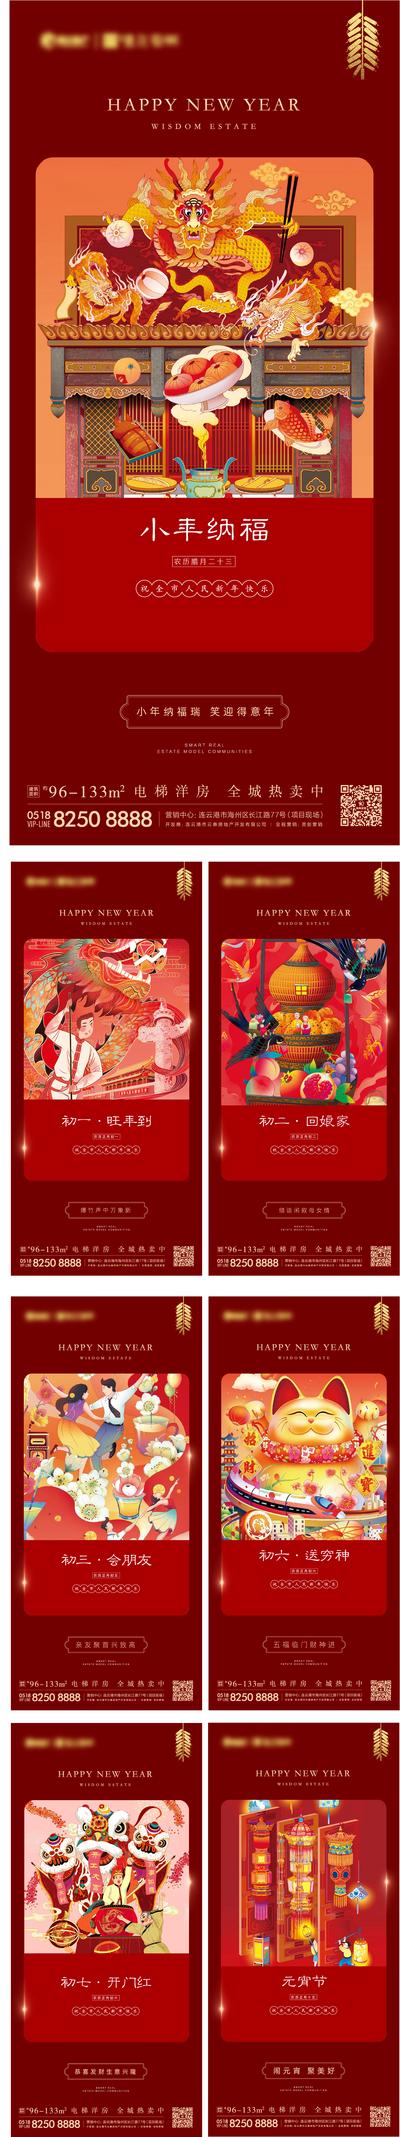 南门网 海报 房地产 中国传统节日 除夕 初一 初八 新年 虎年 年俗 插画 灯笼 红金